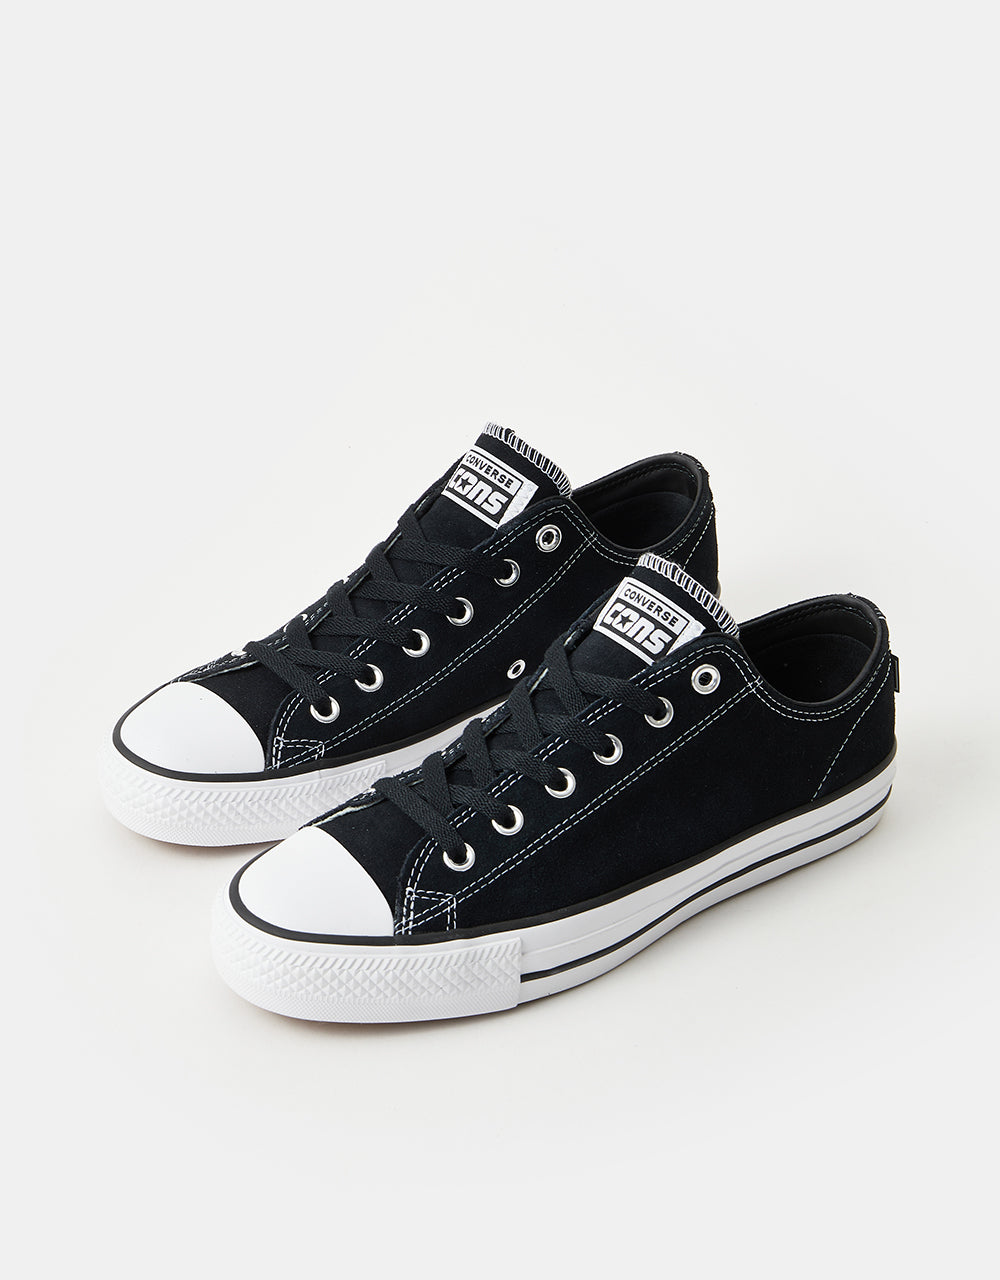 Converse CONS CTAS Pro Suede Skate Shoes - Black/Black/White